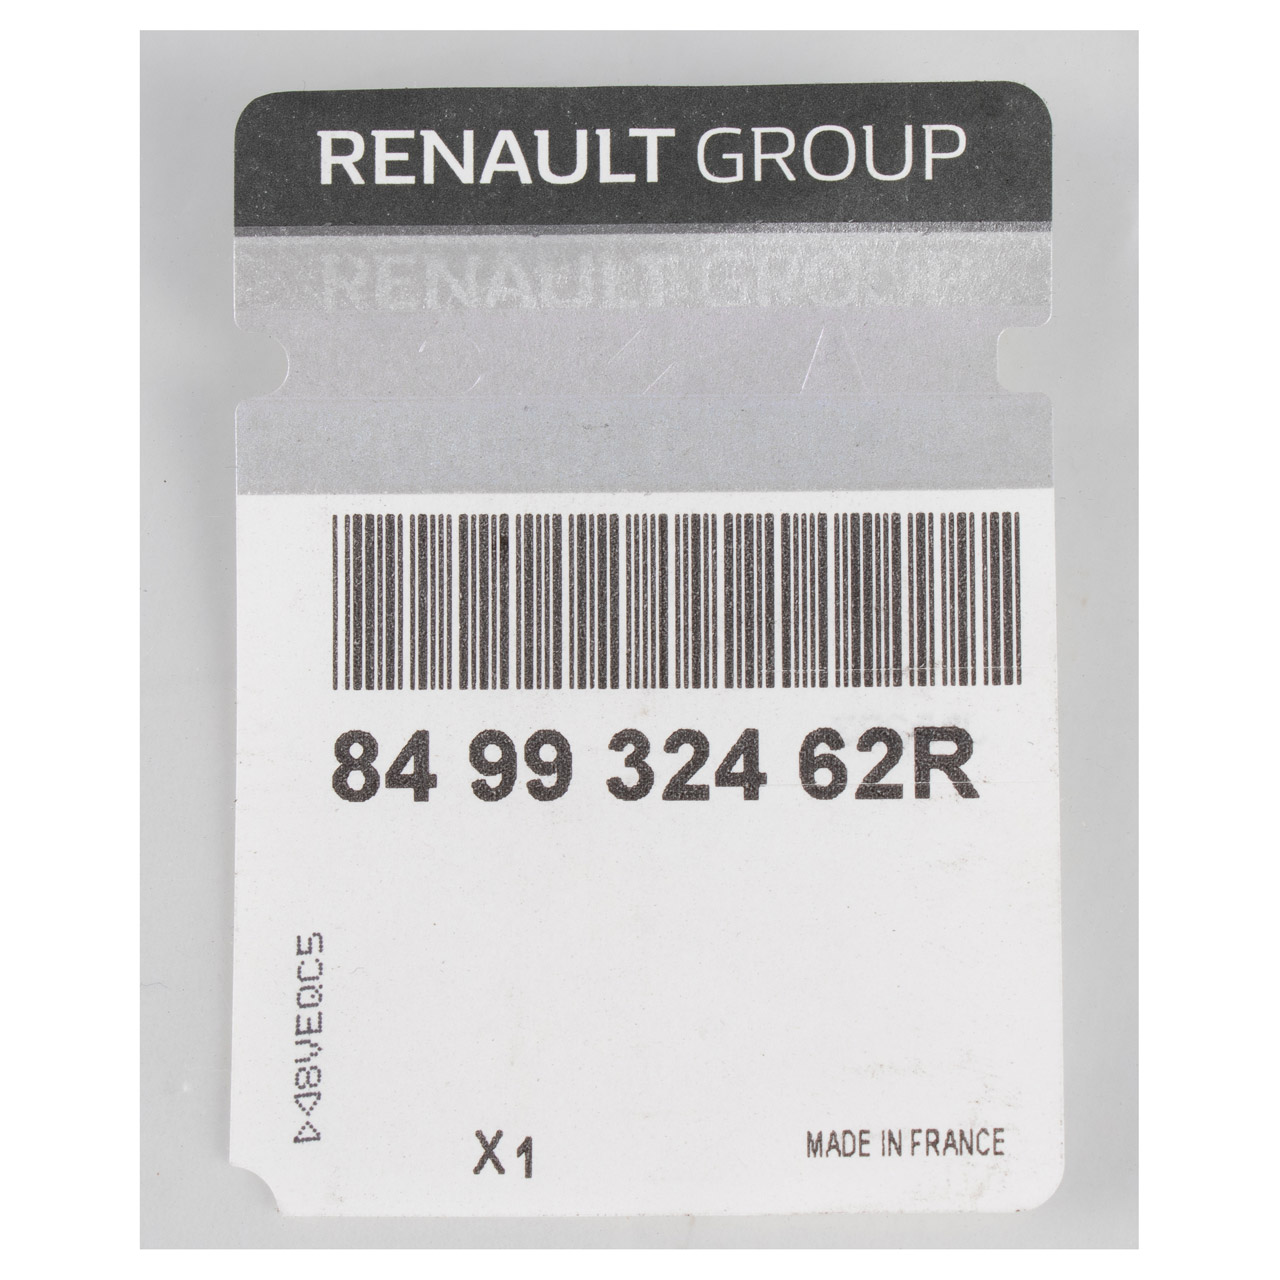 ORIGINAL Renault Einstiegleiste Kofferraum Master 3 hinten innen 849932462R